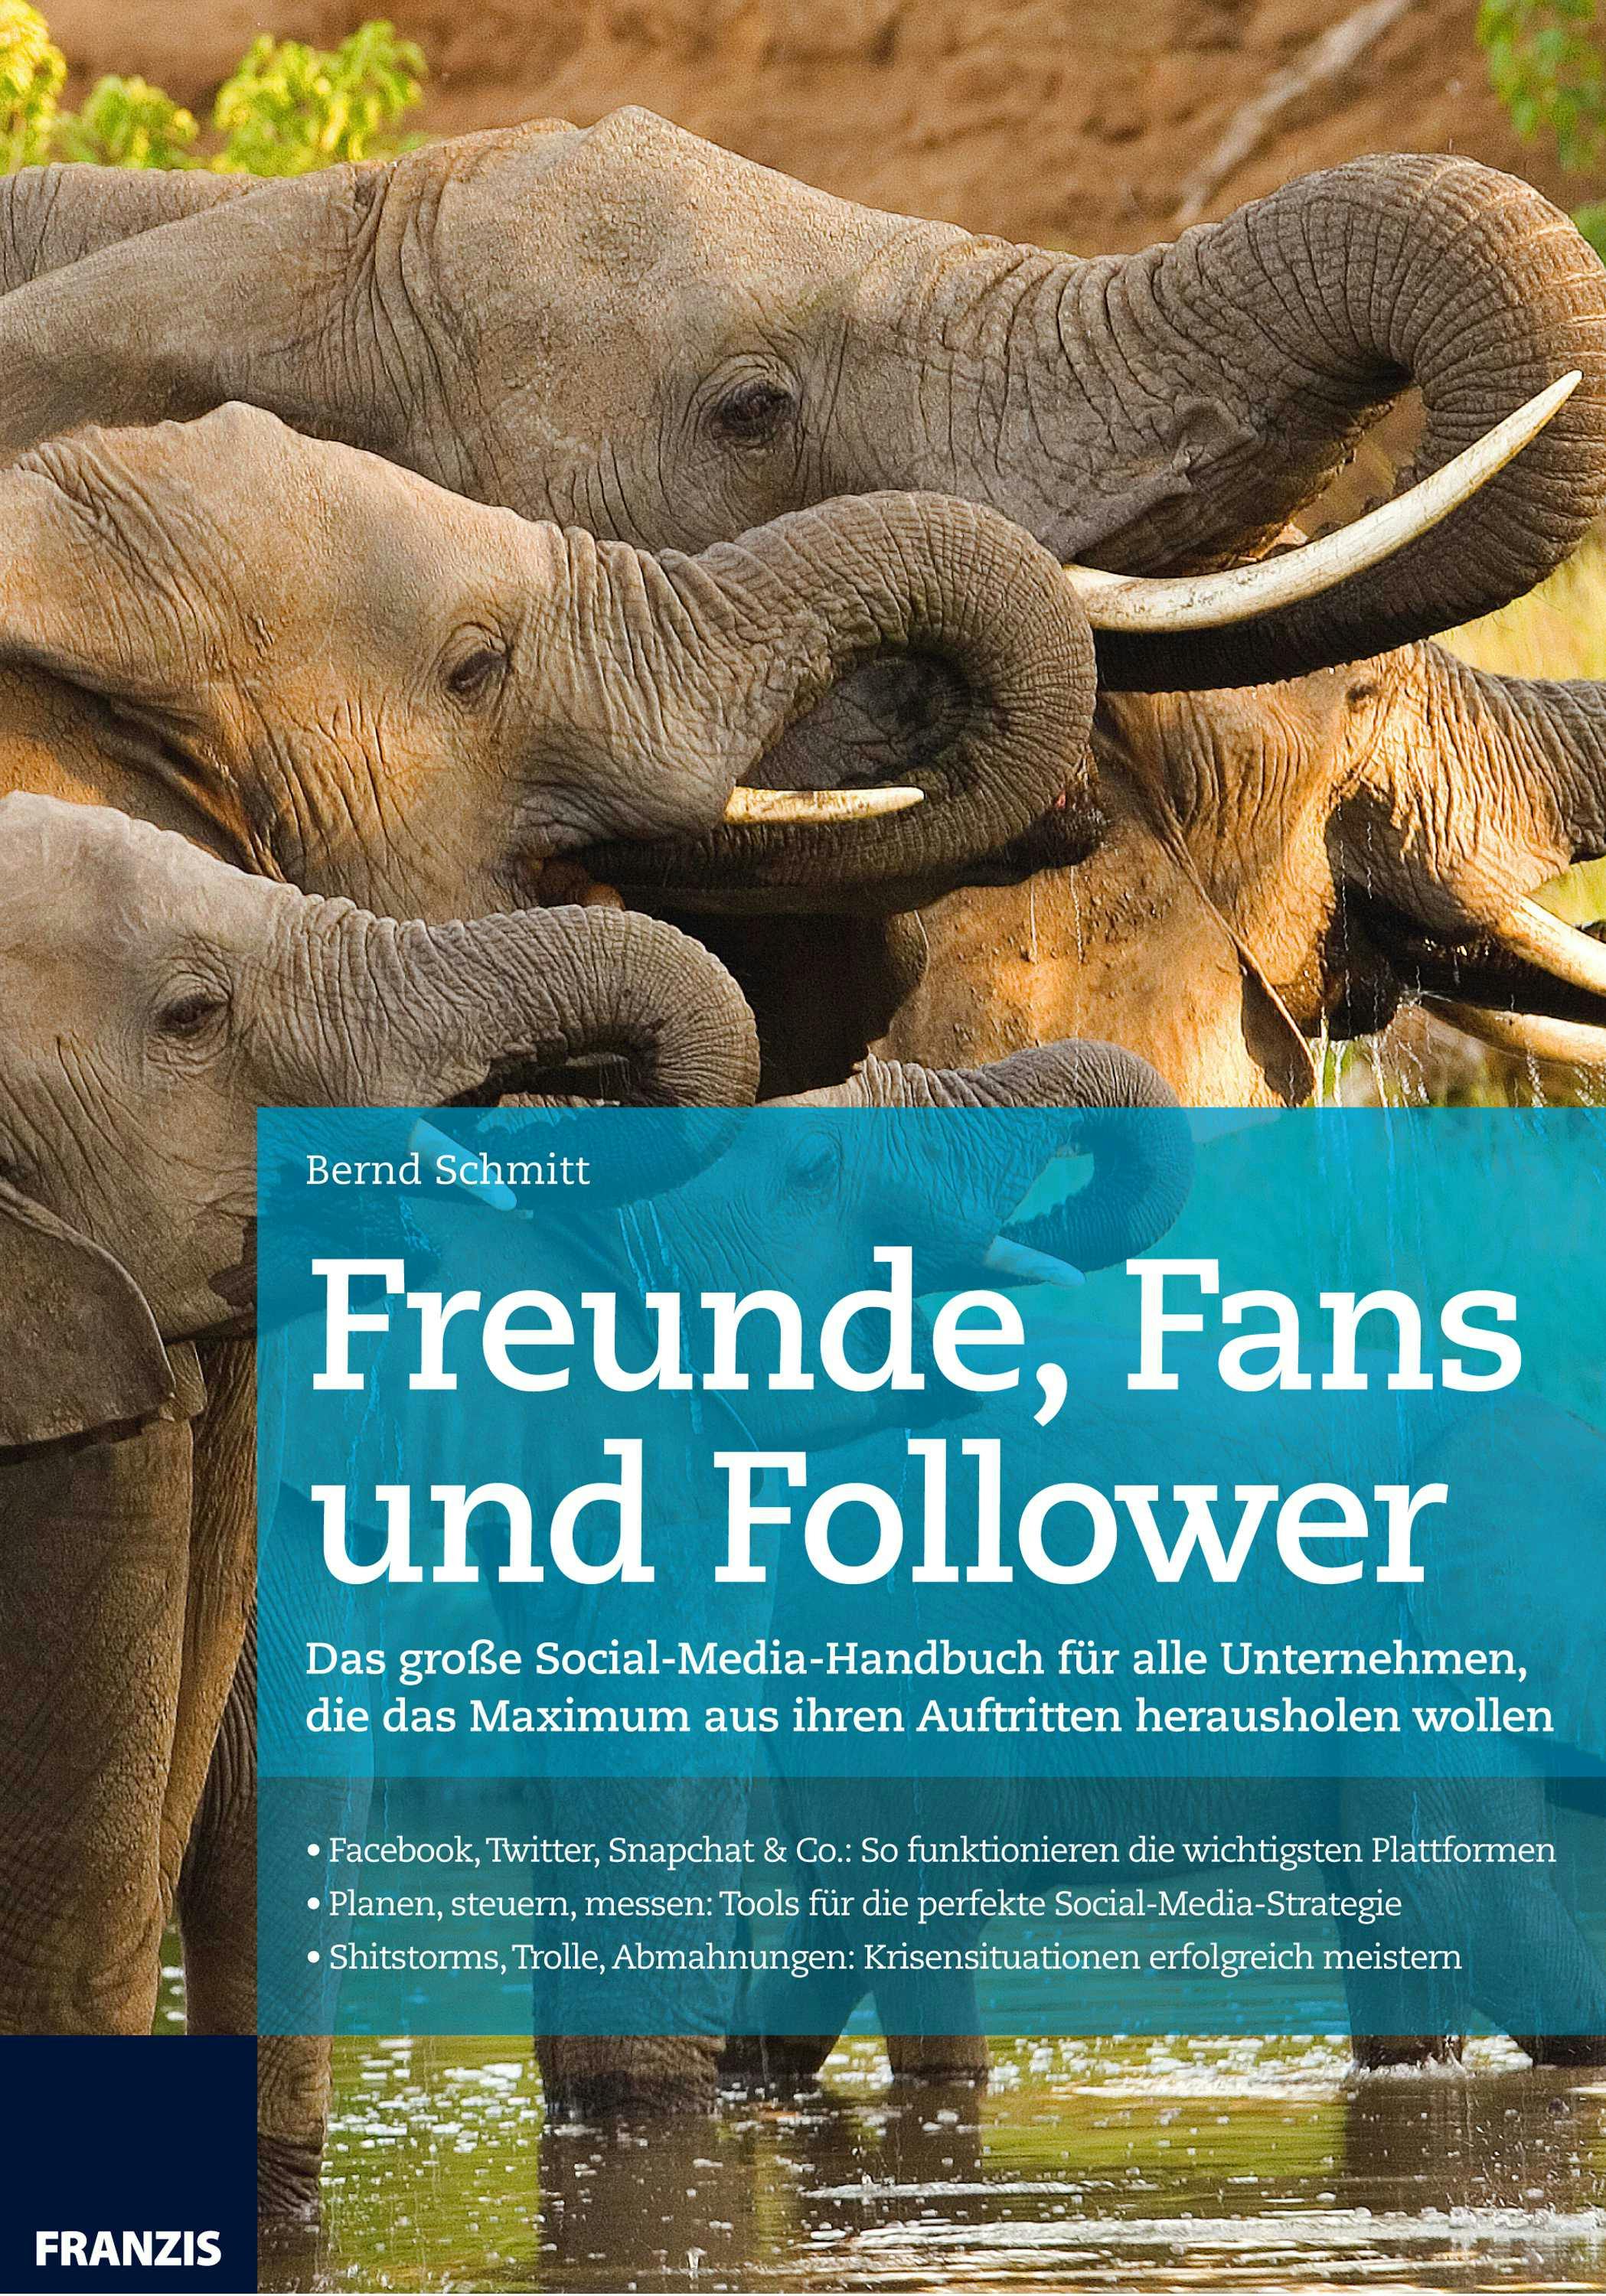 Freunde, Fans und Follower: Das große Social-Media-Handbuch für alle Unternehmen, die das Maximum aus ihren Auftritten herausholen wollen - Bernd Schmitt